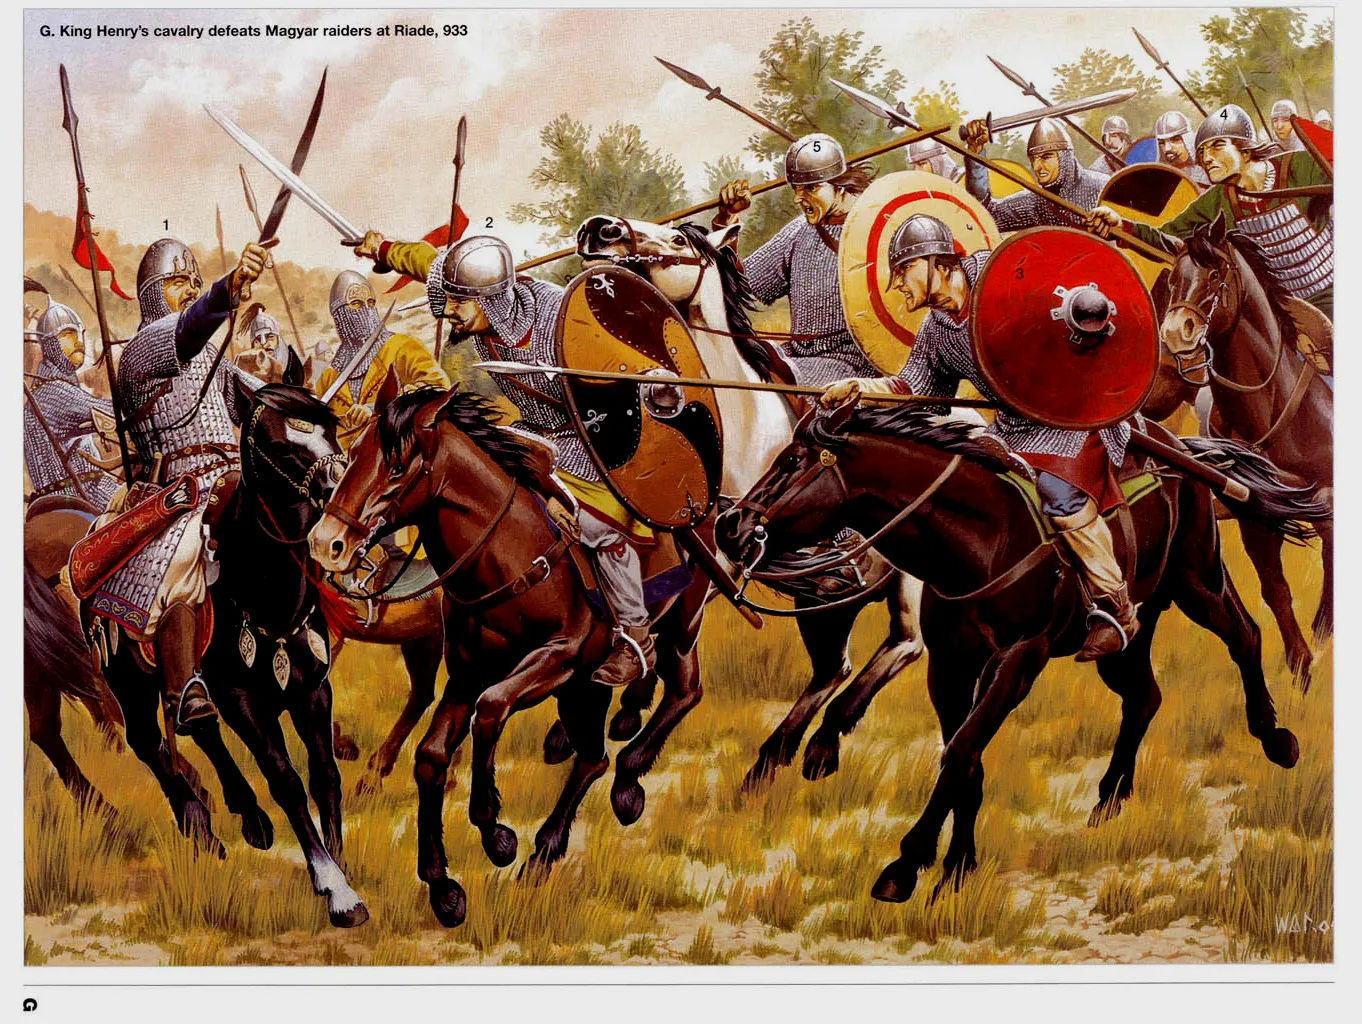 933年大败匈牙利人的德意志骑士们，当时的匈牙利人依然是骑射为主的游牧民族